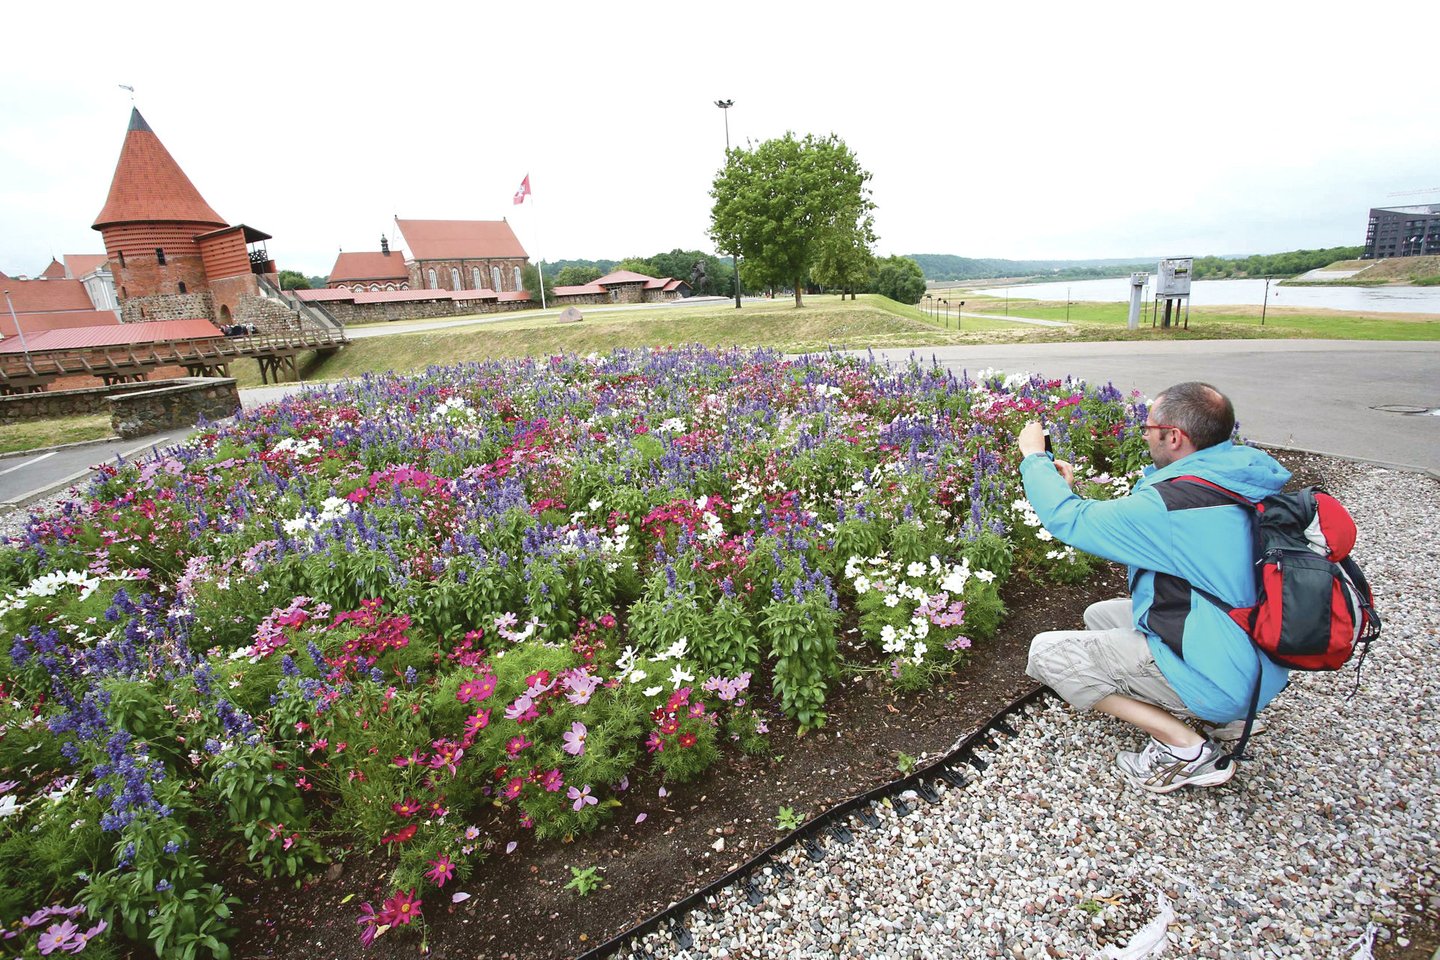 Net trys dideli gėlynai yra įrengti prie Kauno pilies. Jie dažnai laistomi ir kruopščiai prižiūrimi, todėl į miestą atvykstantys turistai neatsispiria čia žydinčių įvairiaspalvių gėlių grožiui ir jas noriai įamžina.